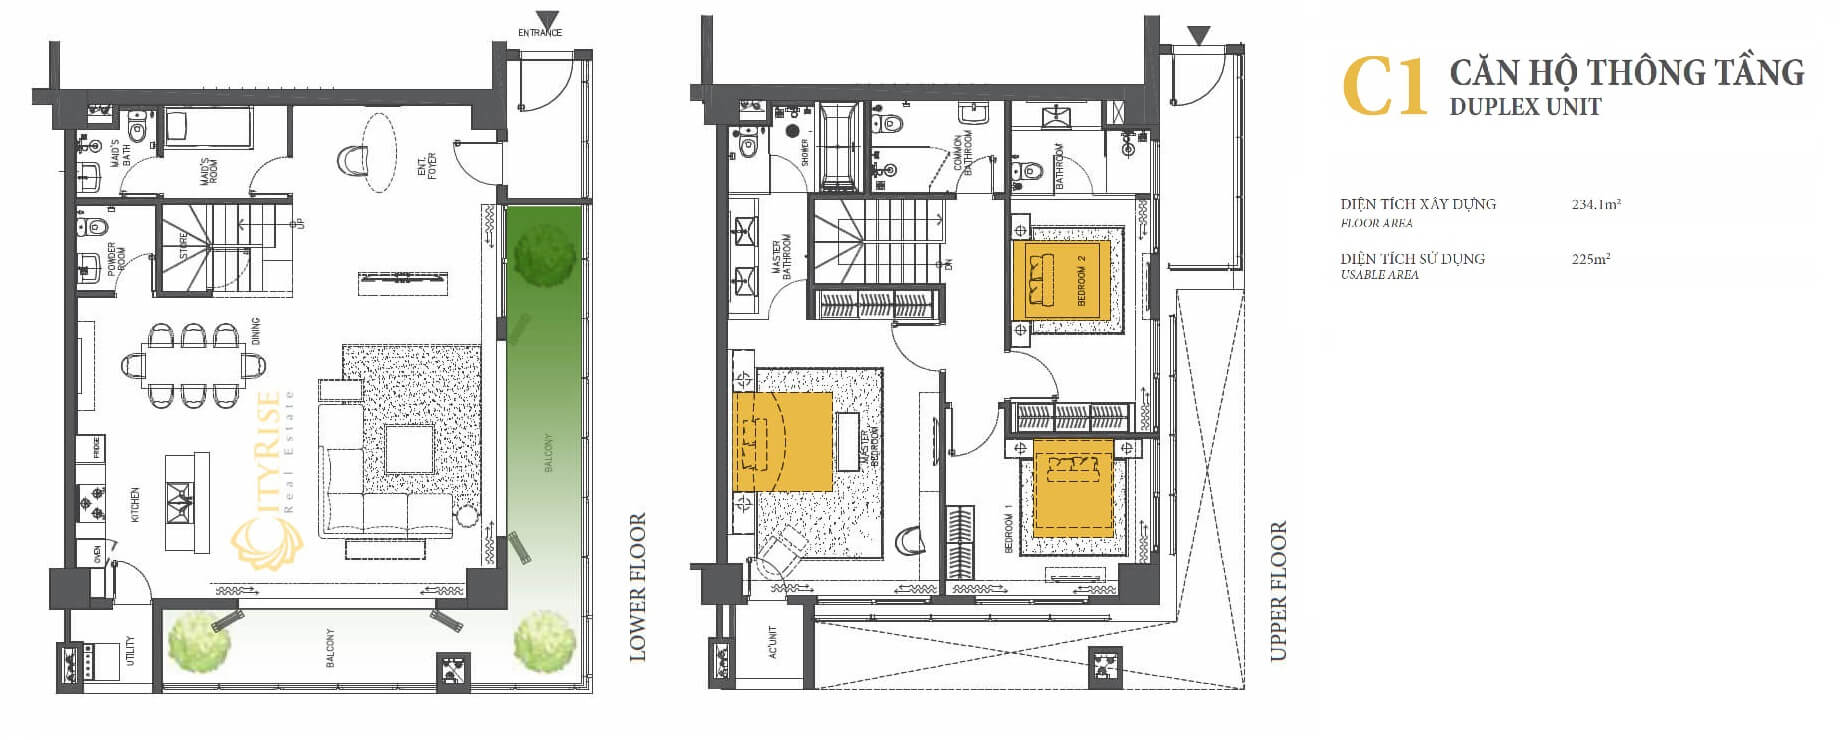 Layout thiết kế căn hộ duplex thông tầng tháp Brilliant